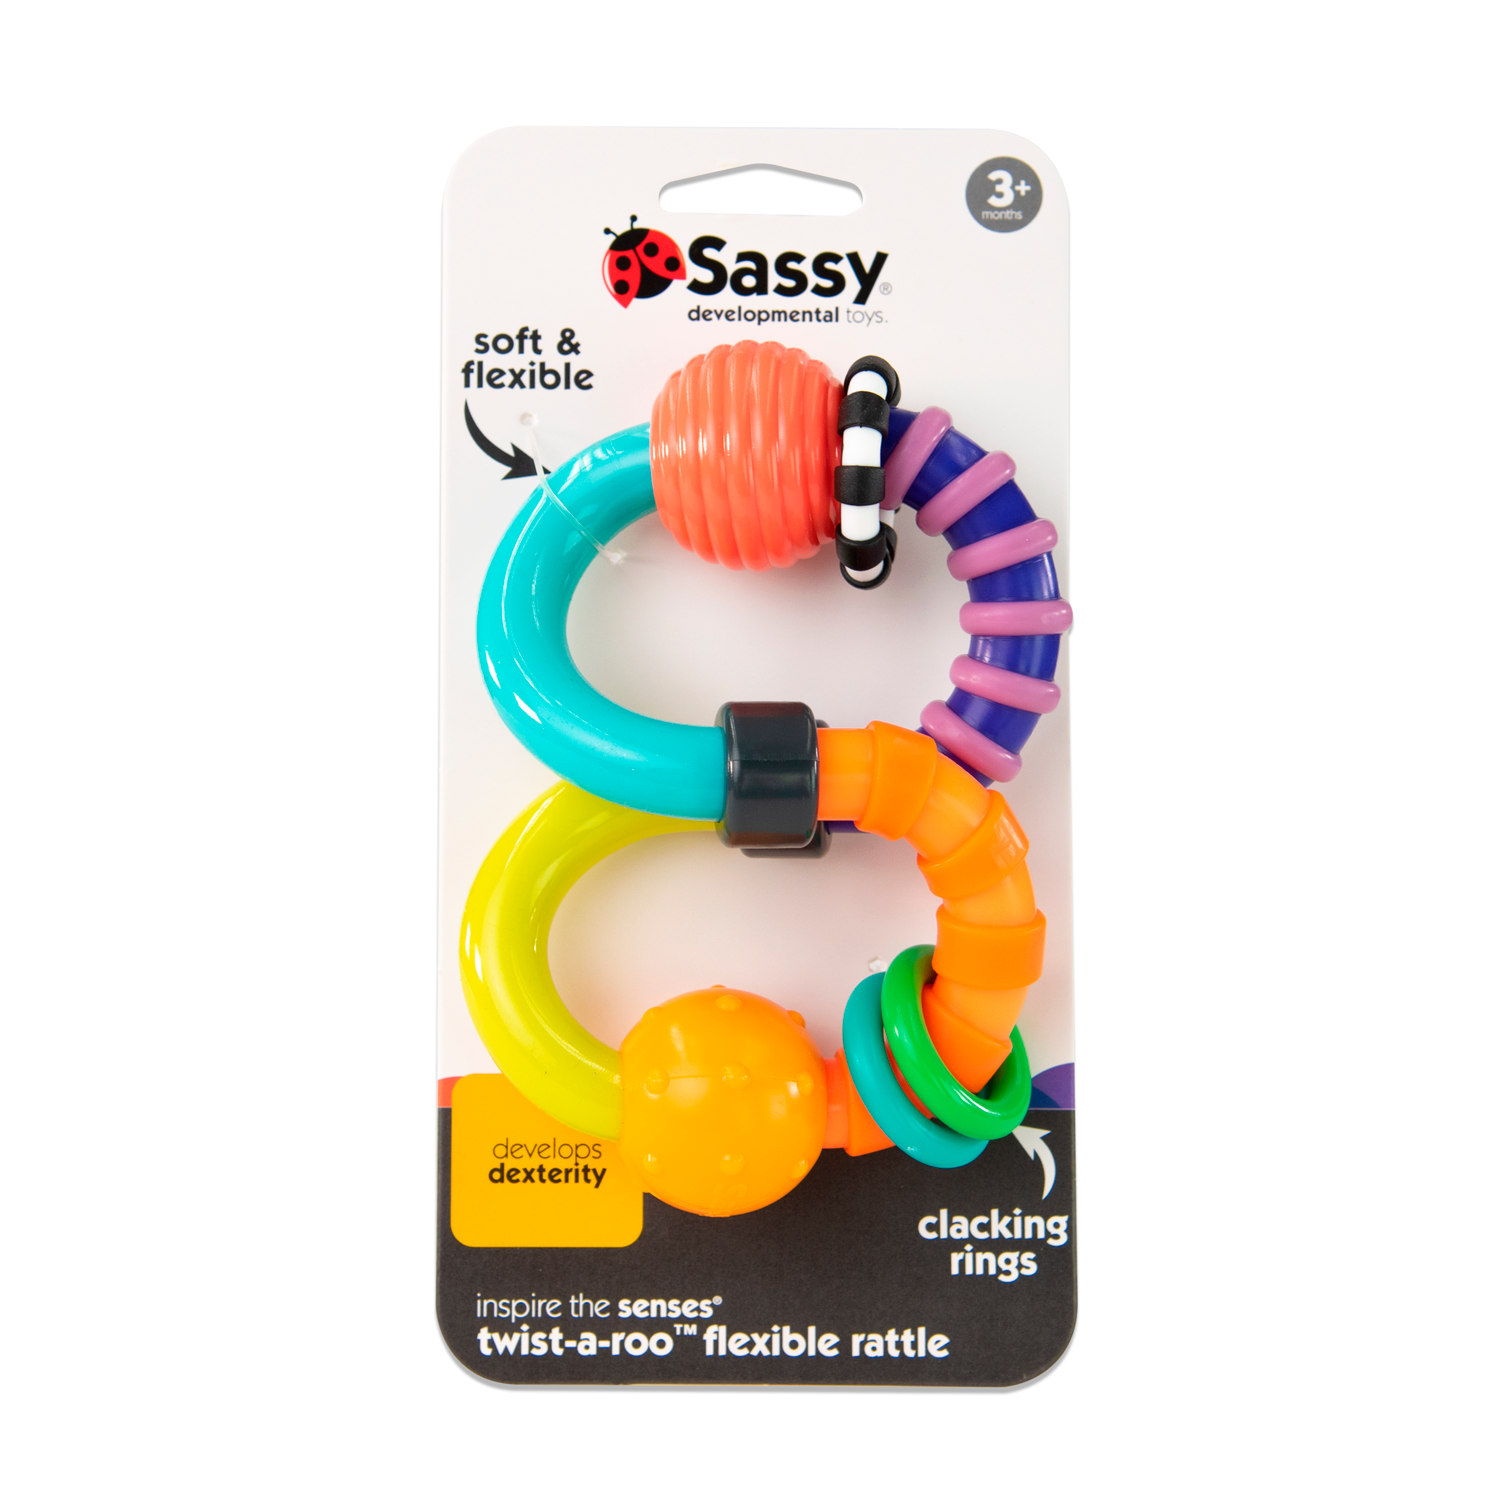 Sassy Sonajero Twist - A -Roo